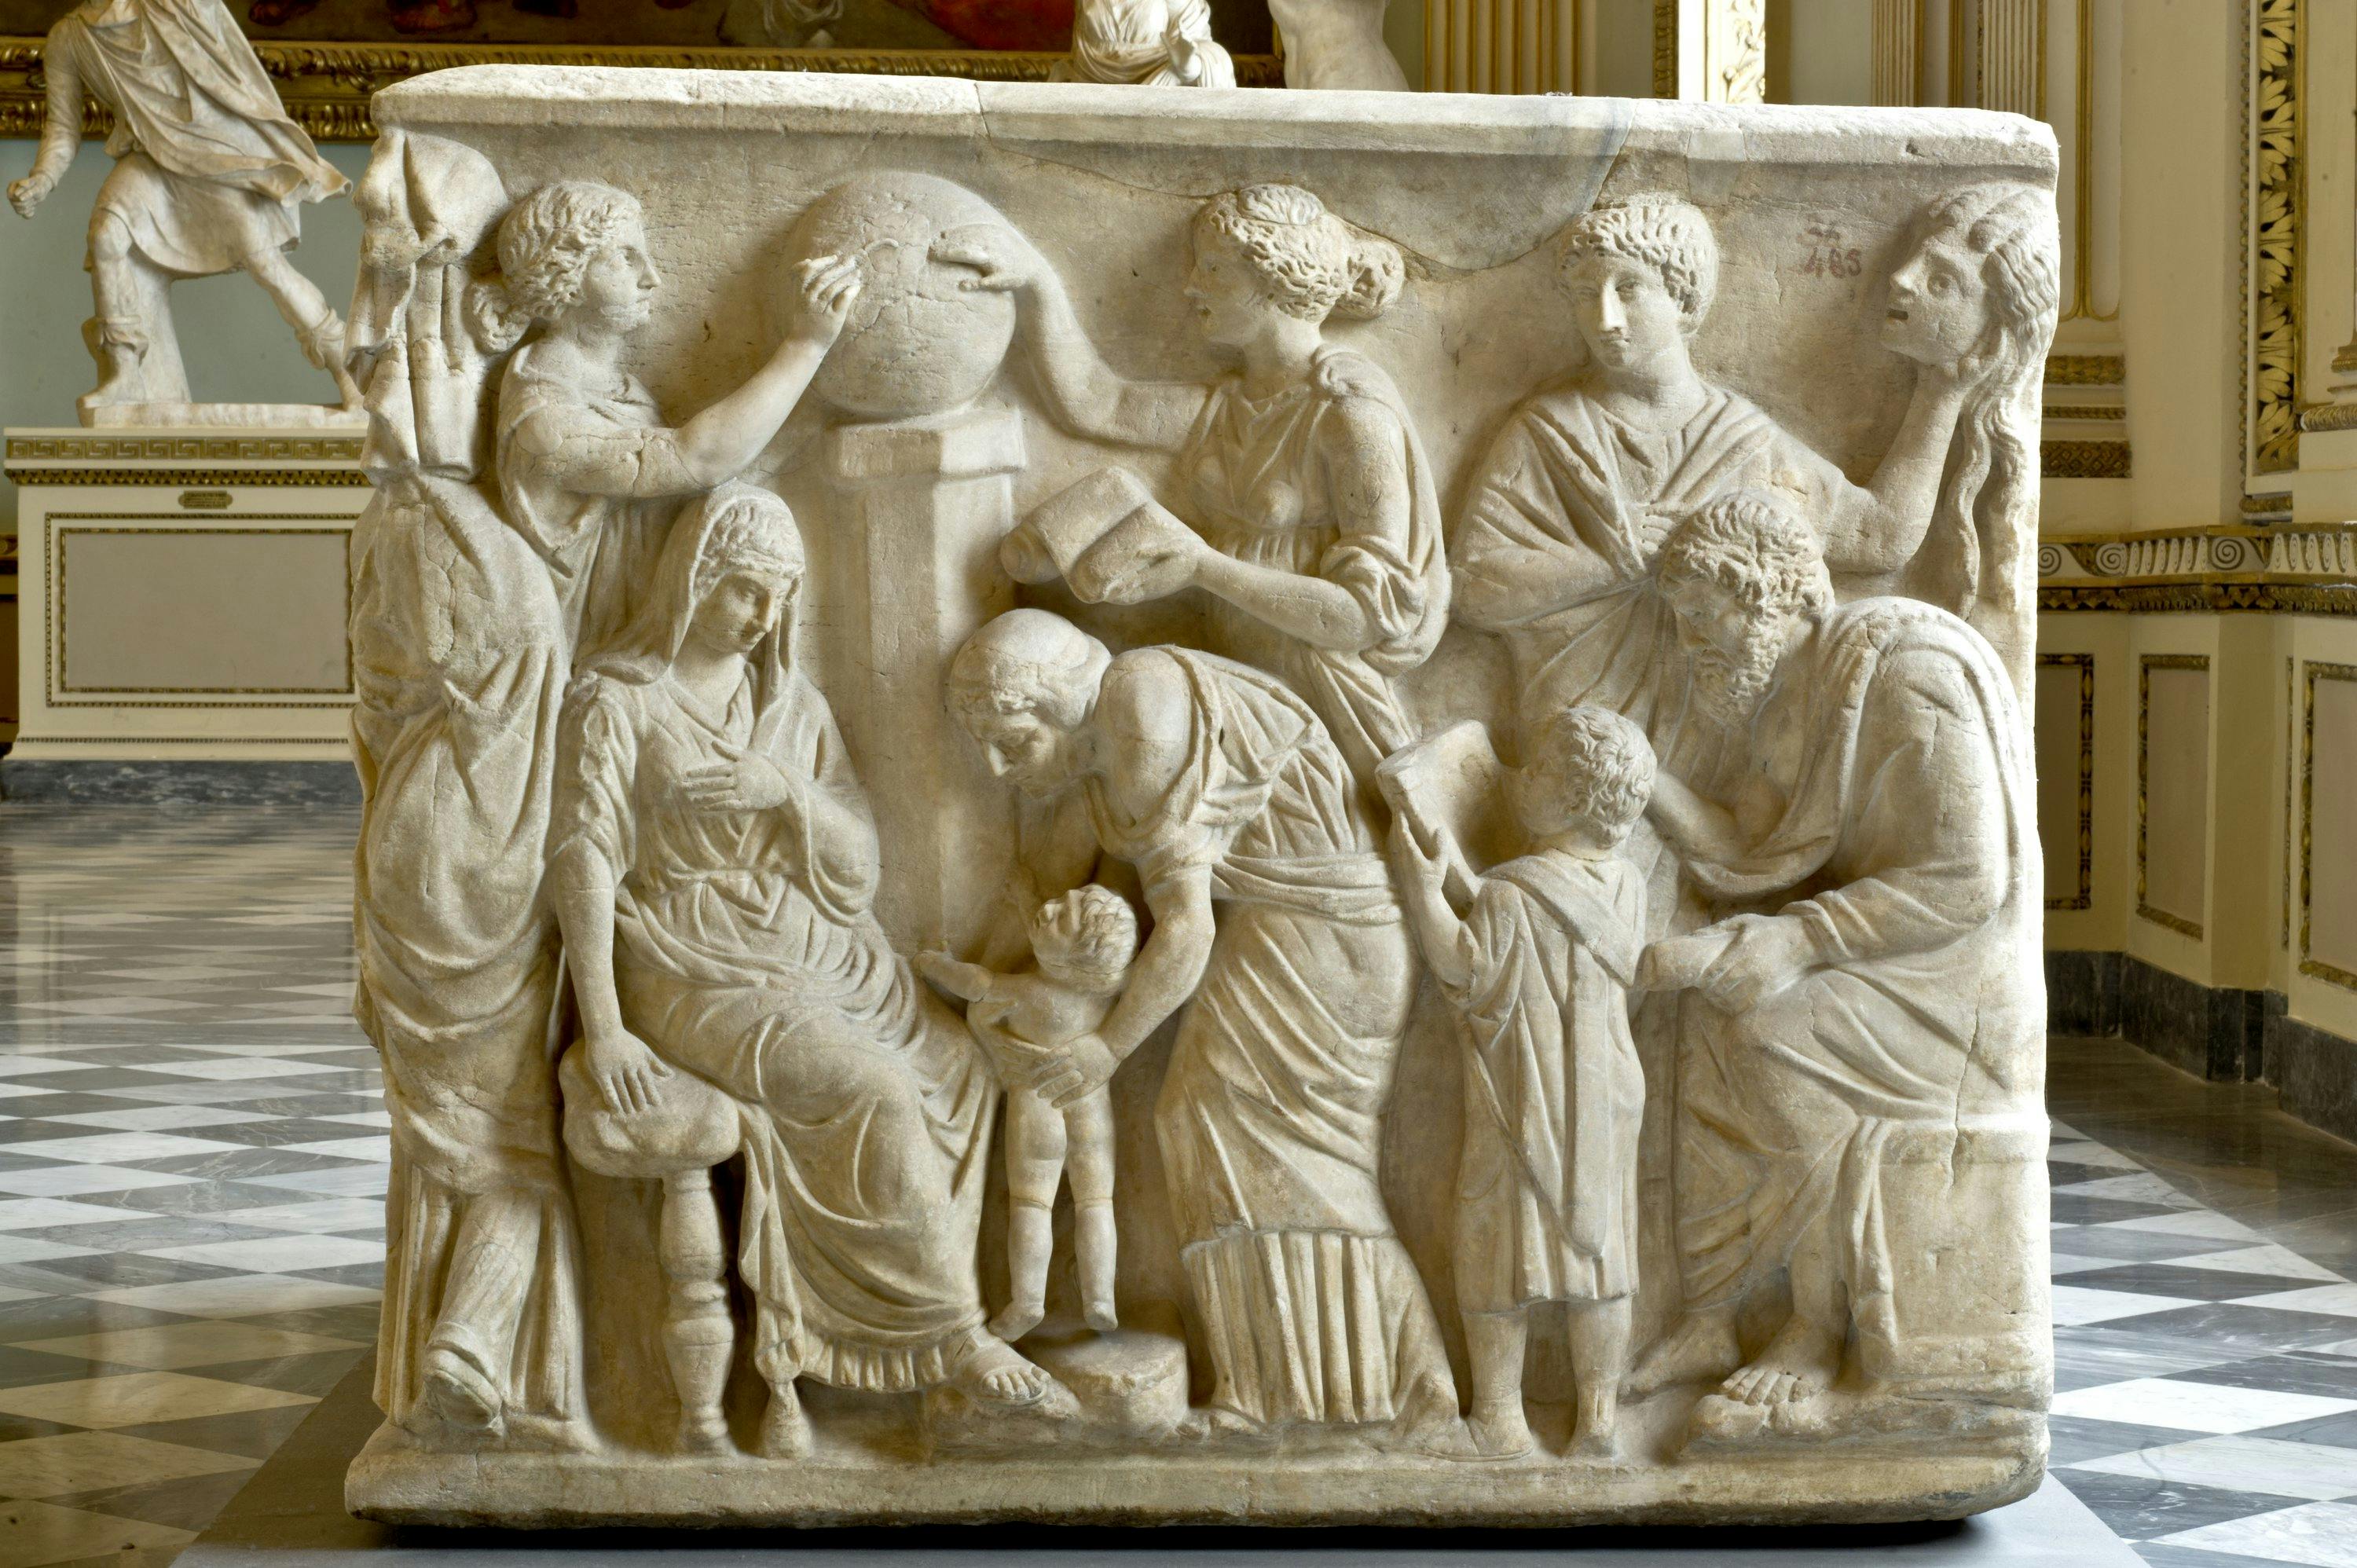 Sarcophagus with scenes of vita humana et militaris